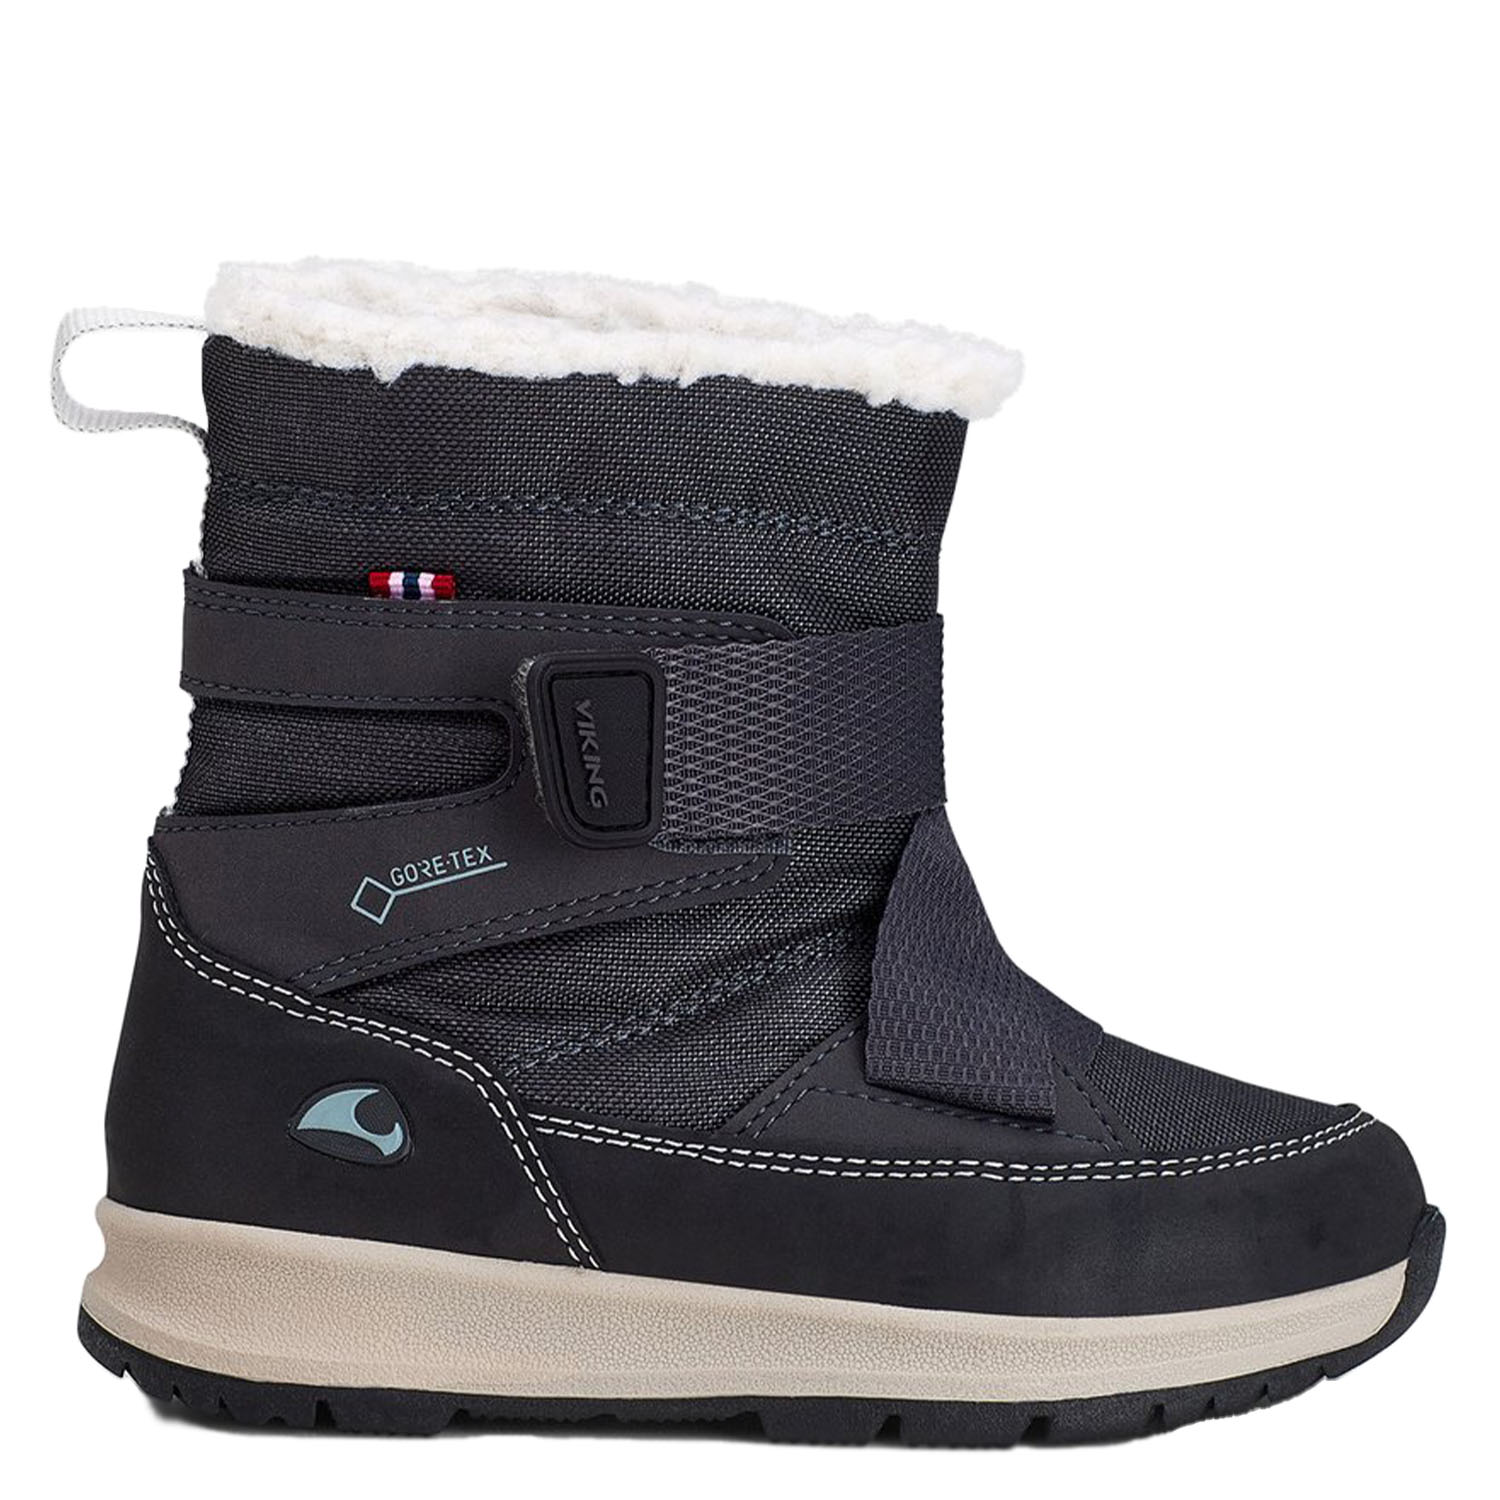 Полуботинки Viking Shoes 3-91455-7702, Charcoal Black, 26